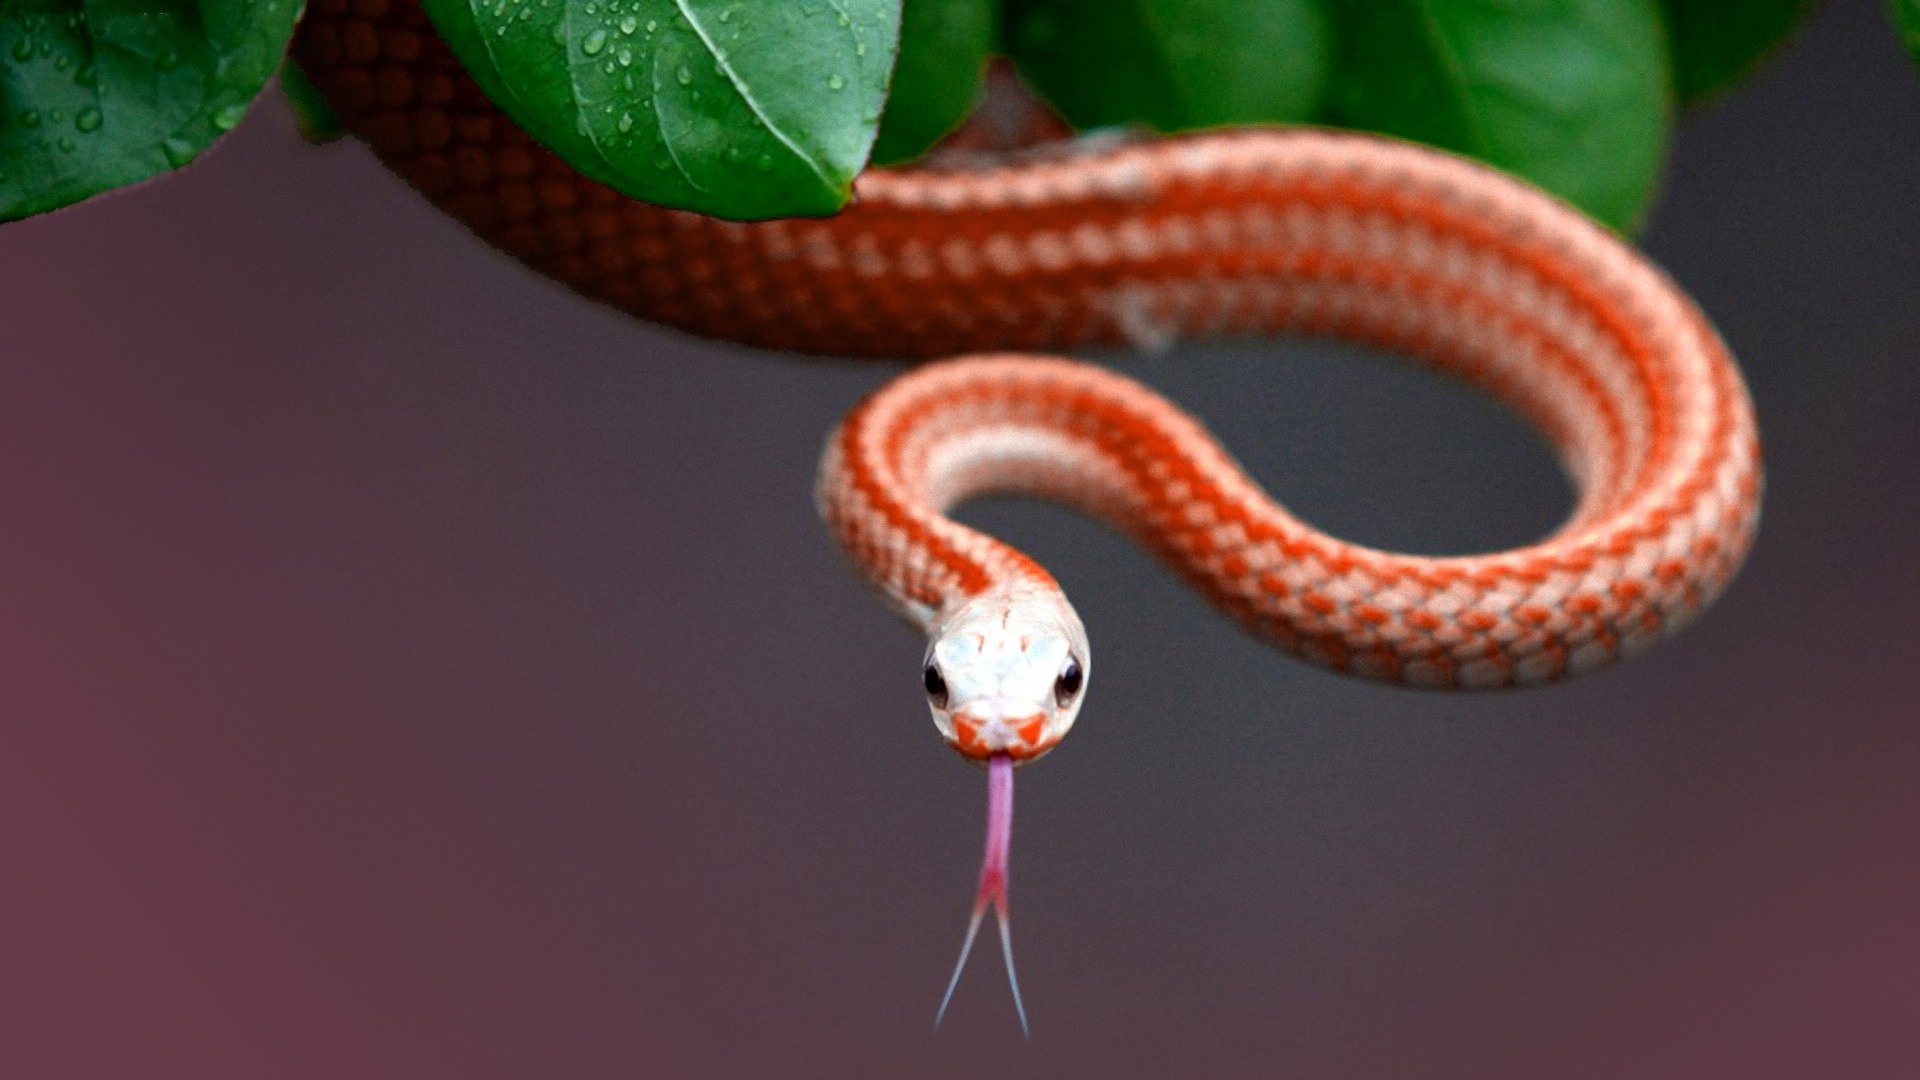 Tổng hợp hình ảnh về loài rắn đẹp nhất - [Kích thước hình ảnh: 1920x1080 px]